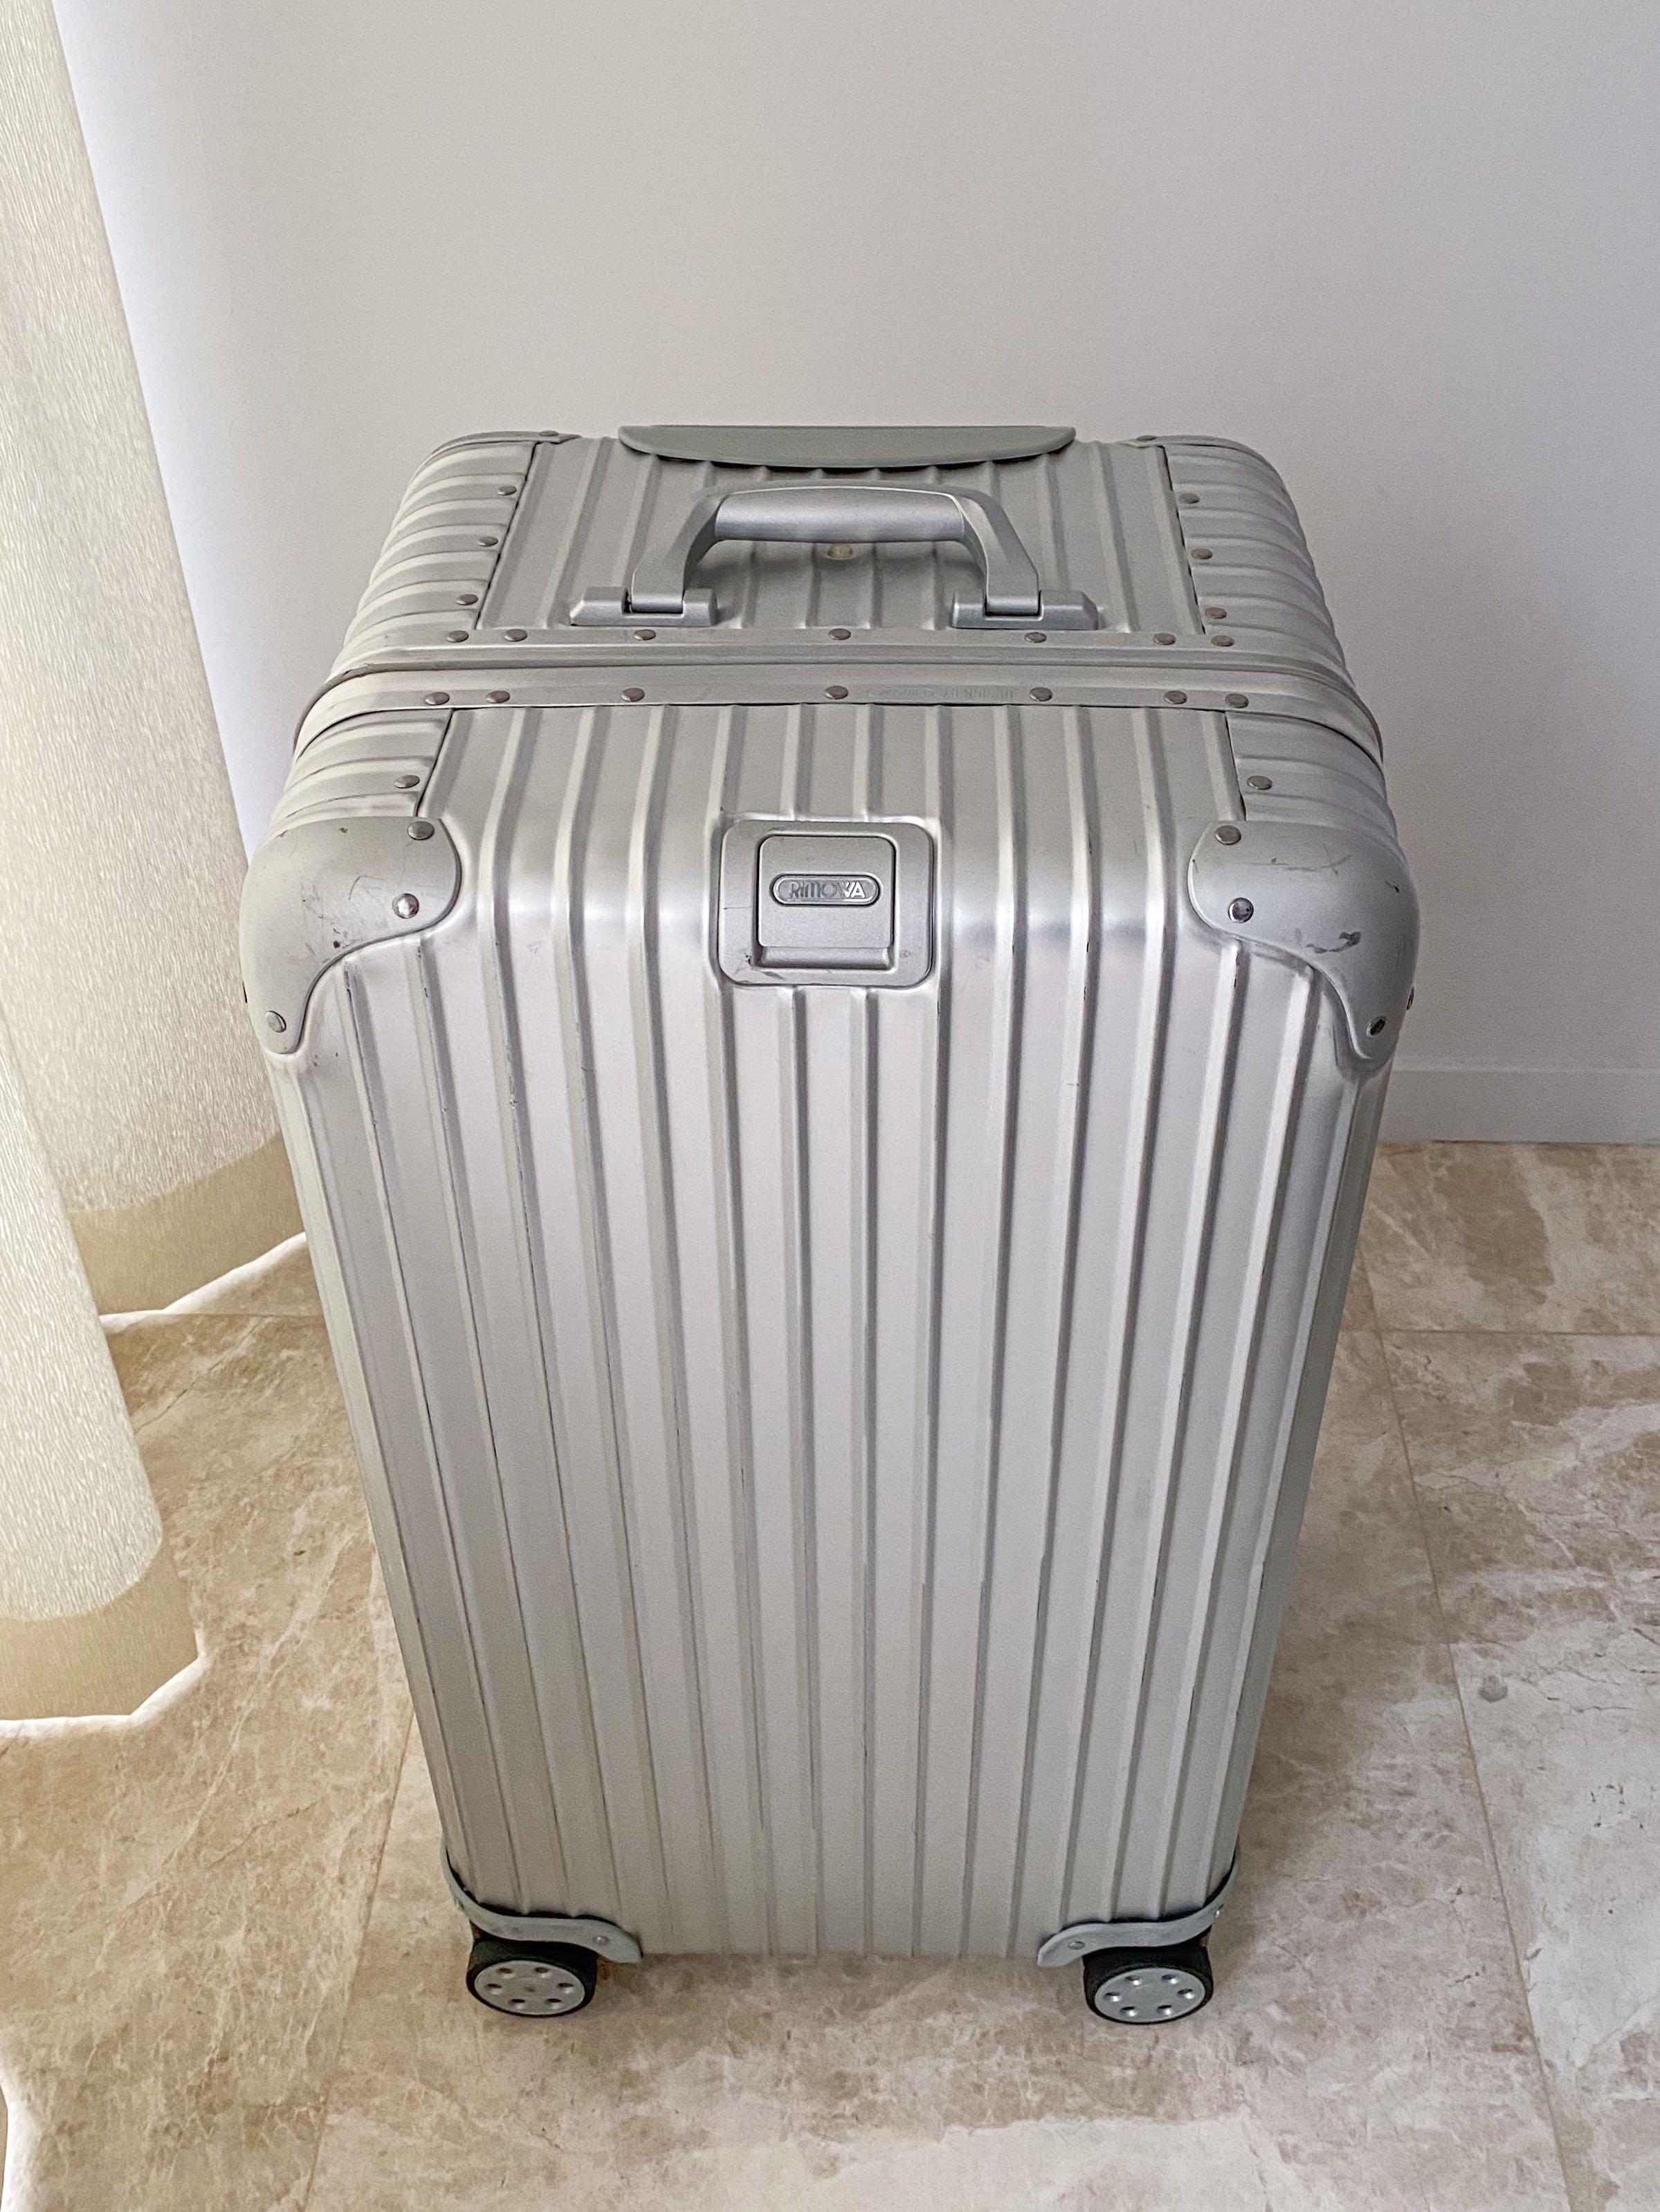 Original Trunk XL Large Aluminium Suitcase, Silver